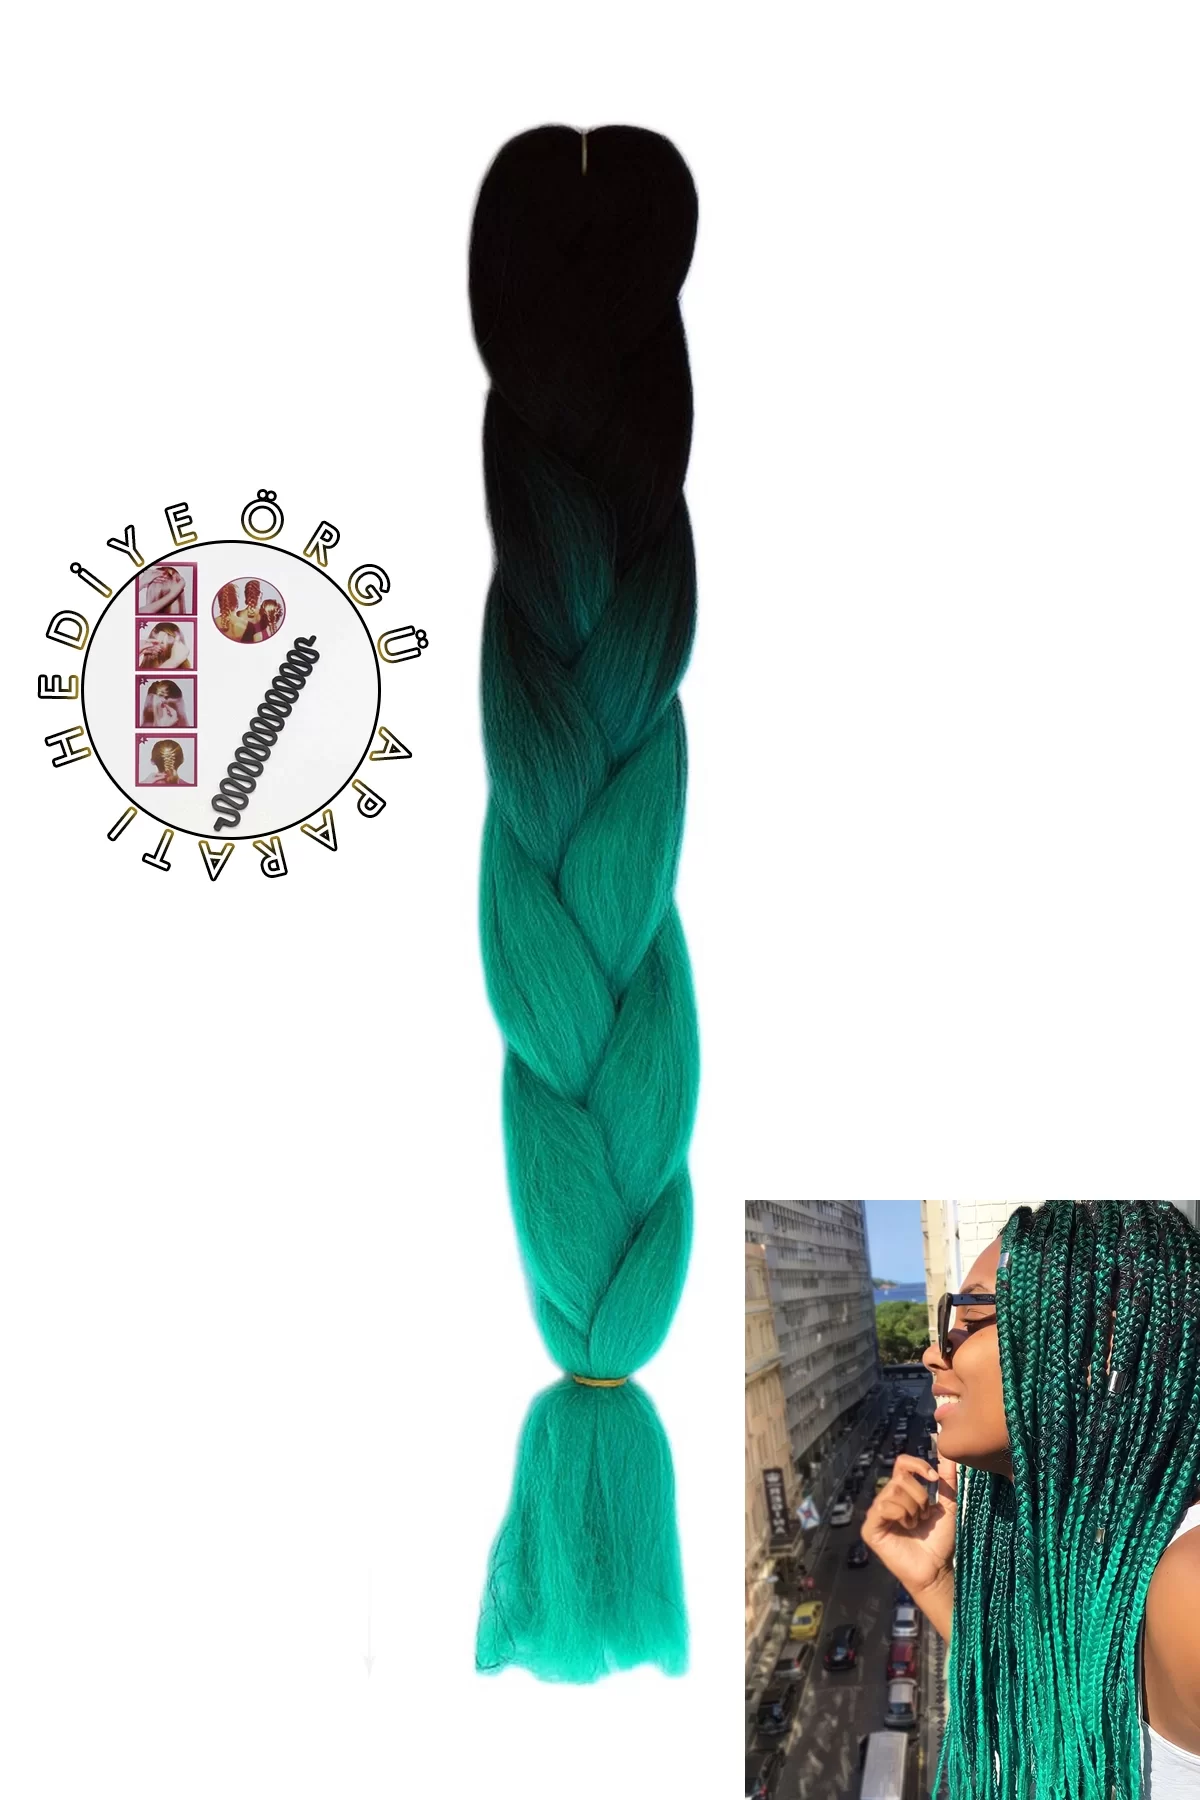 Siyah Turkuaz İki Renk Ombreli Afrika Zenci Örgüsü Box Braid Sentetik Saç 60cm 100gr